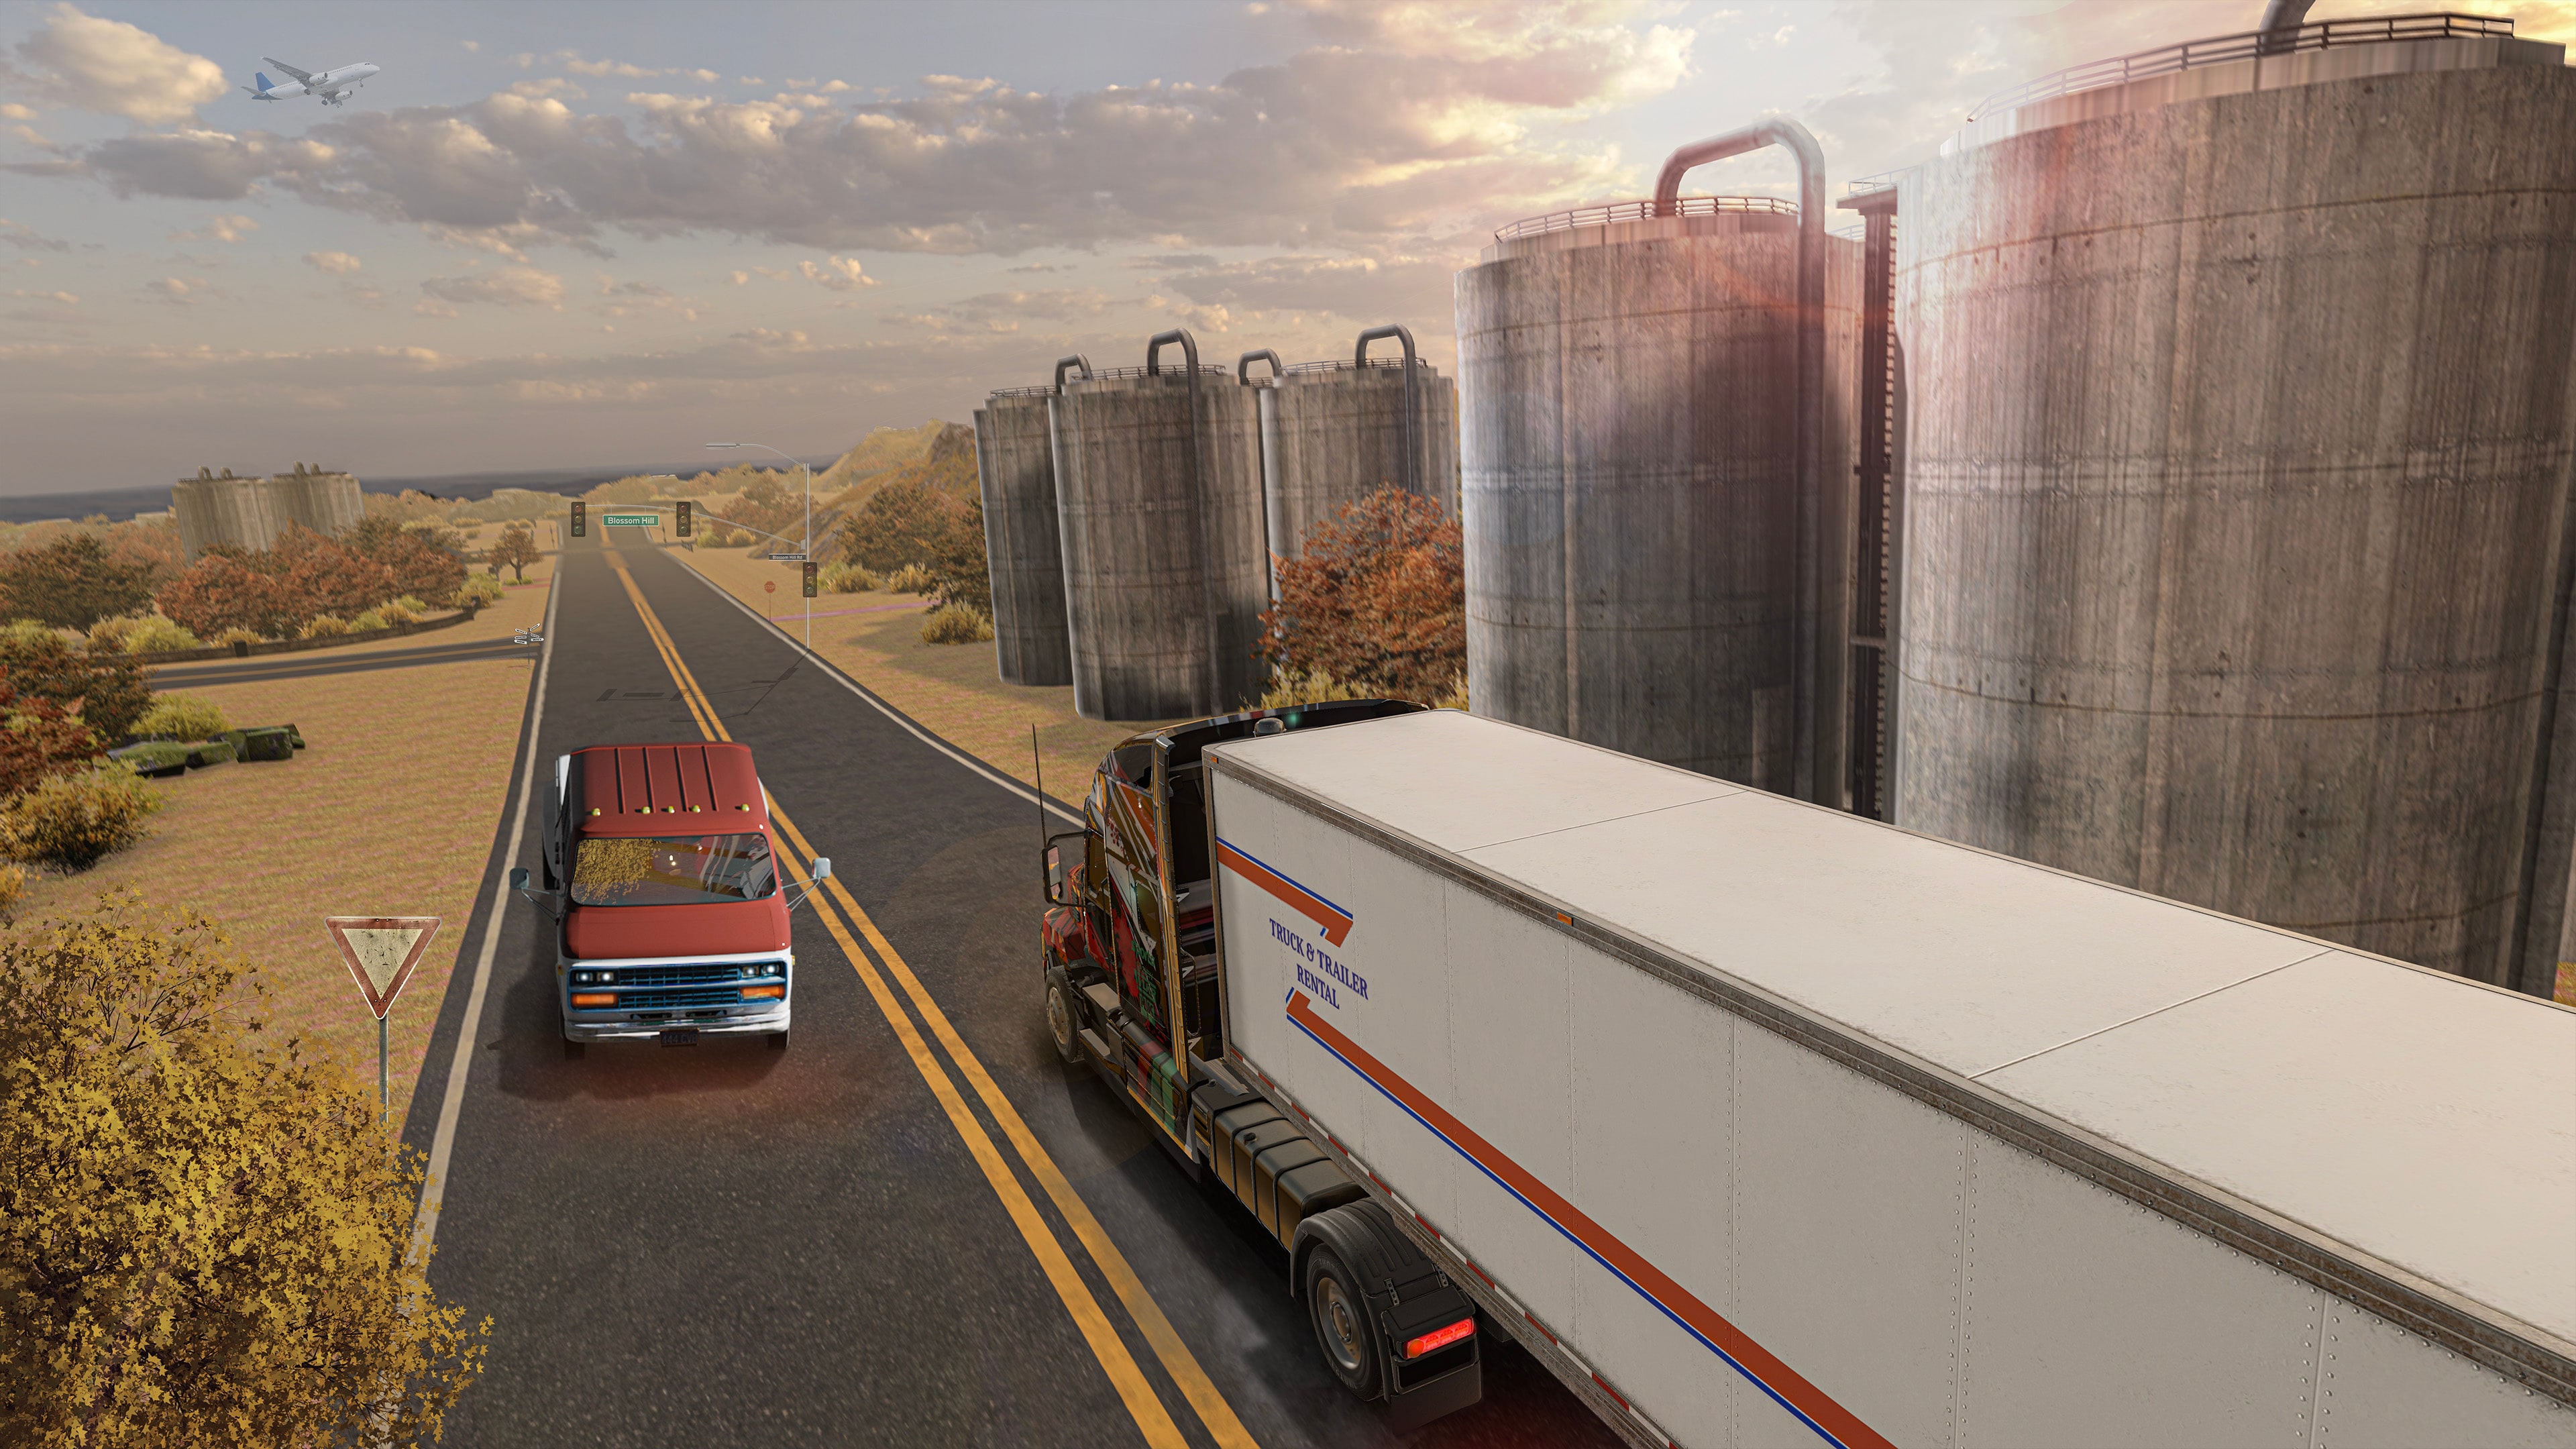 Truck Driver Para PS4 - Mídia Digital - Nextgame